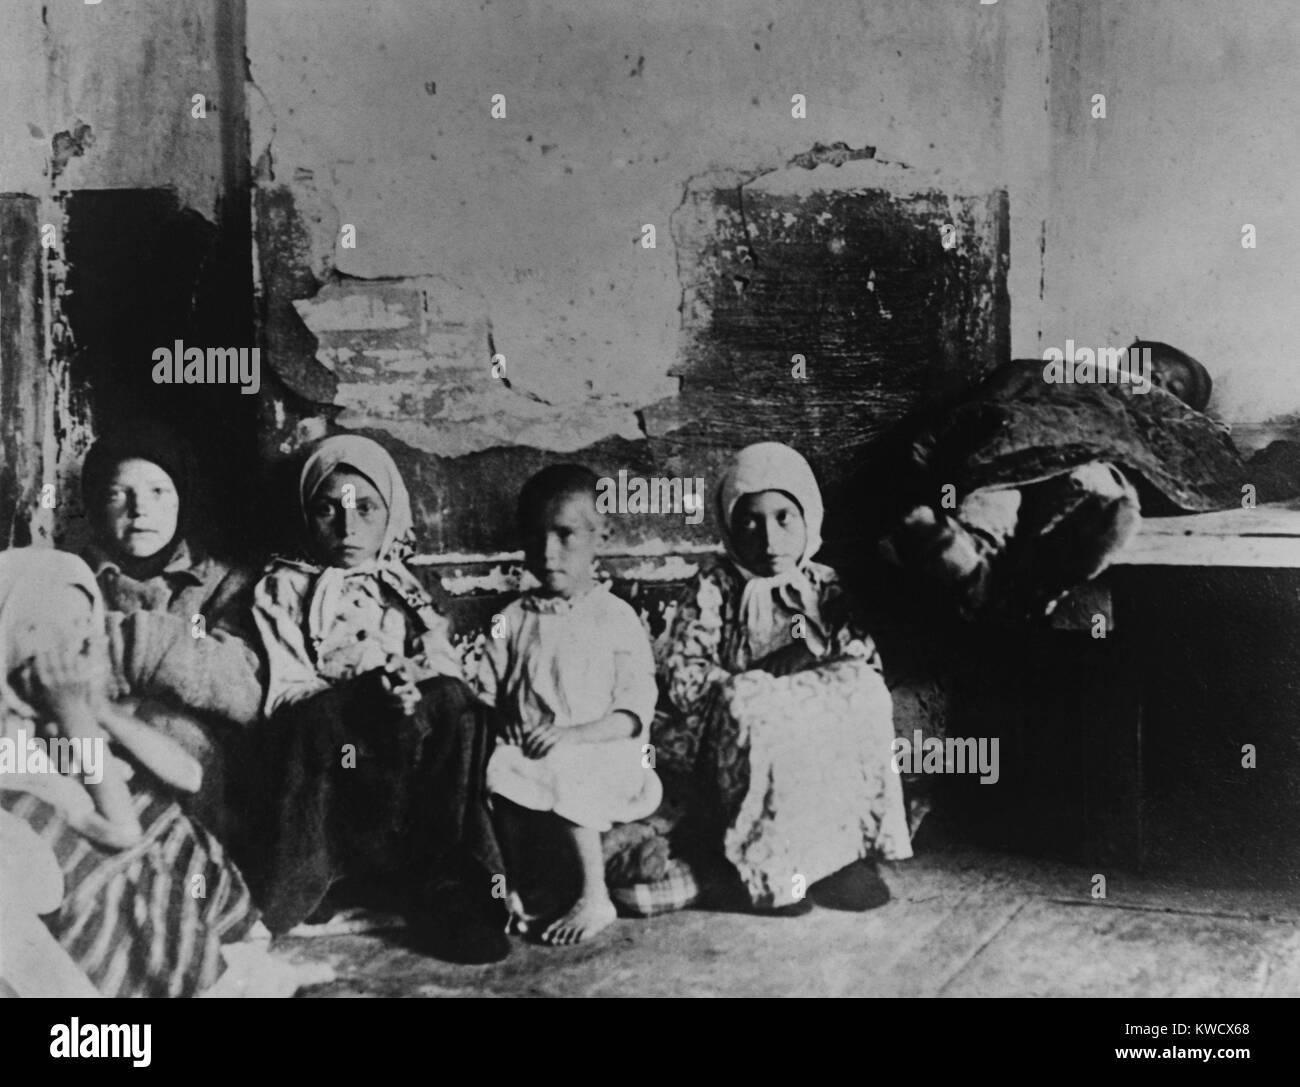 Bambini affamati, abbandonata dai loro genitori a Samara, nel distretto di Volga, 1921. Americano di amministrazione di rilievo è stata la distribuzione di cibo nella regione (BSLOC_2017_2_25) Foto Stock